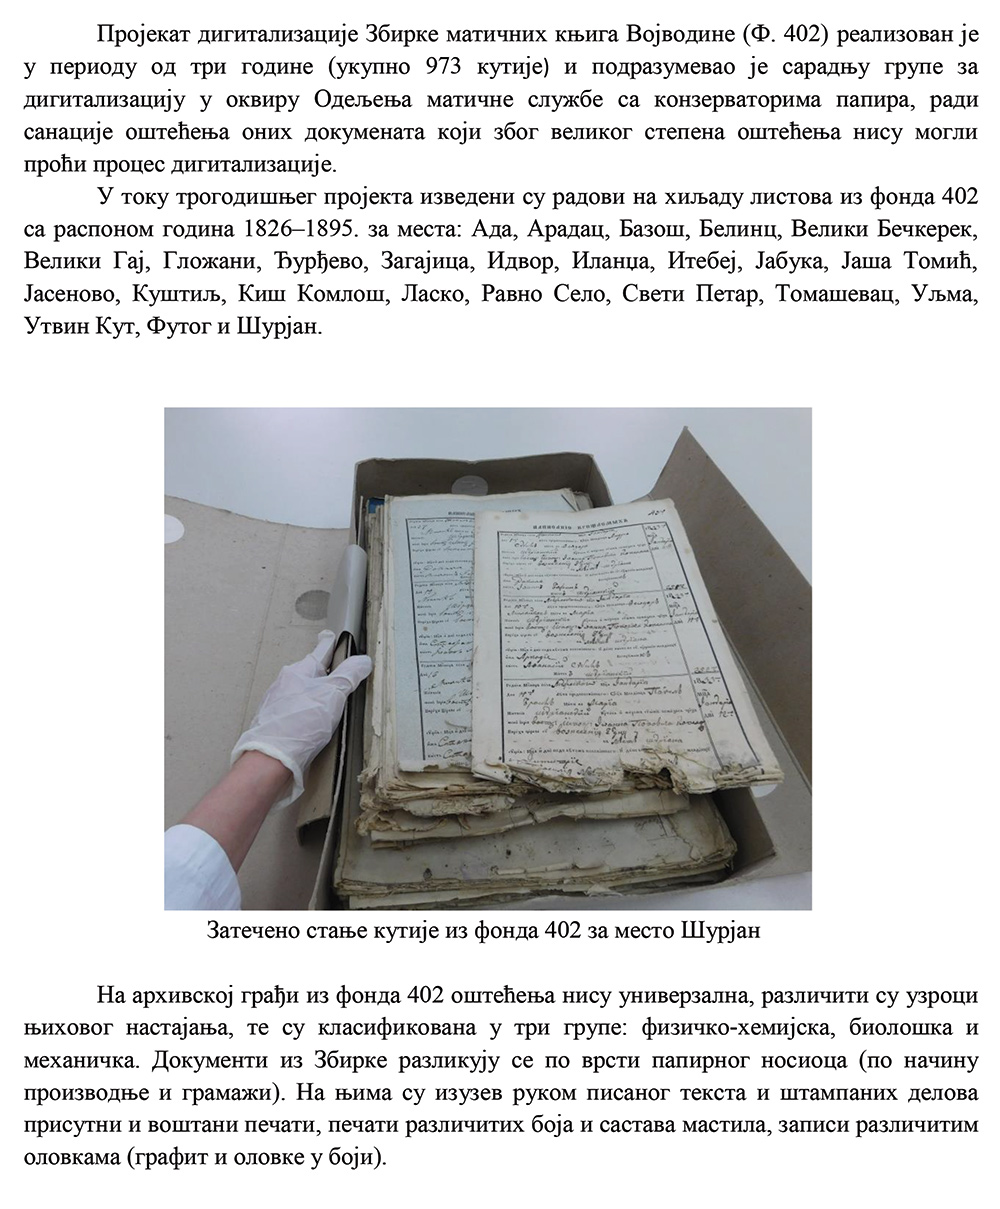 Конзерваторско-рестаураторски радови изведени на документима из Збирке матичних књига Војводине